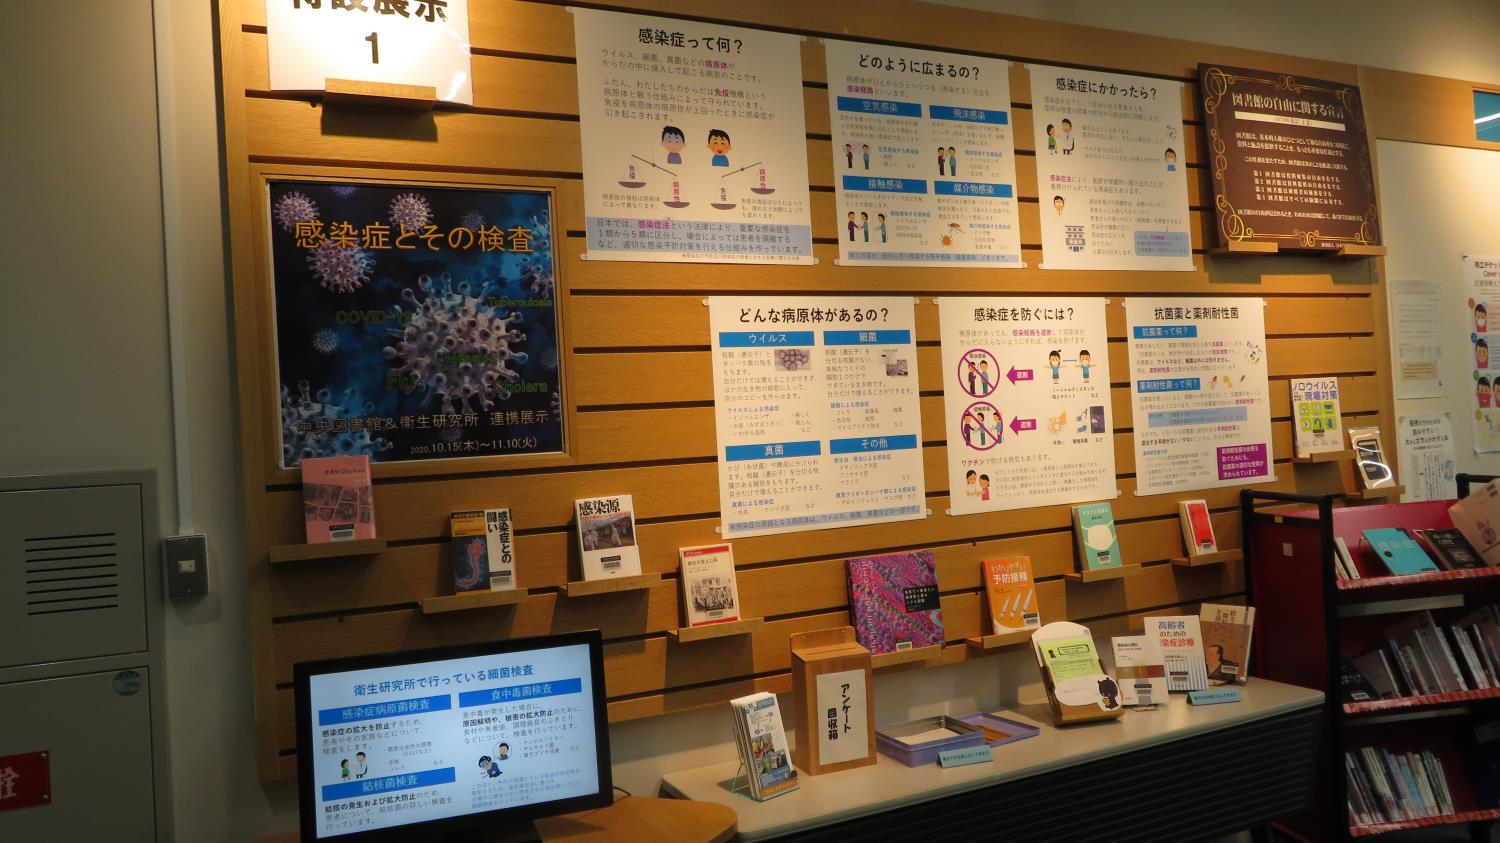 札幌市立図書館感染症ポスター展